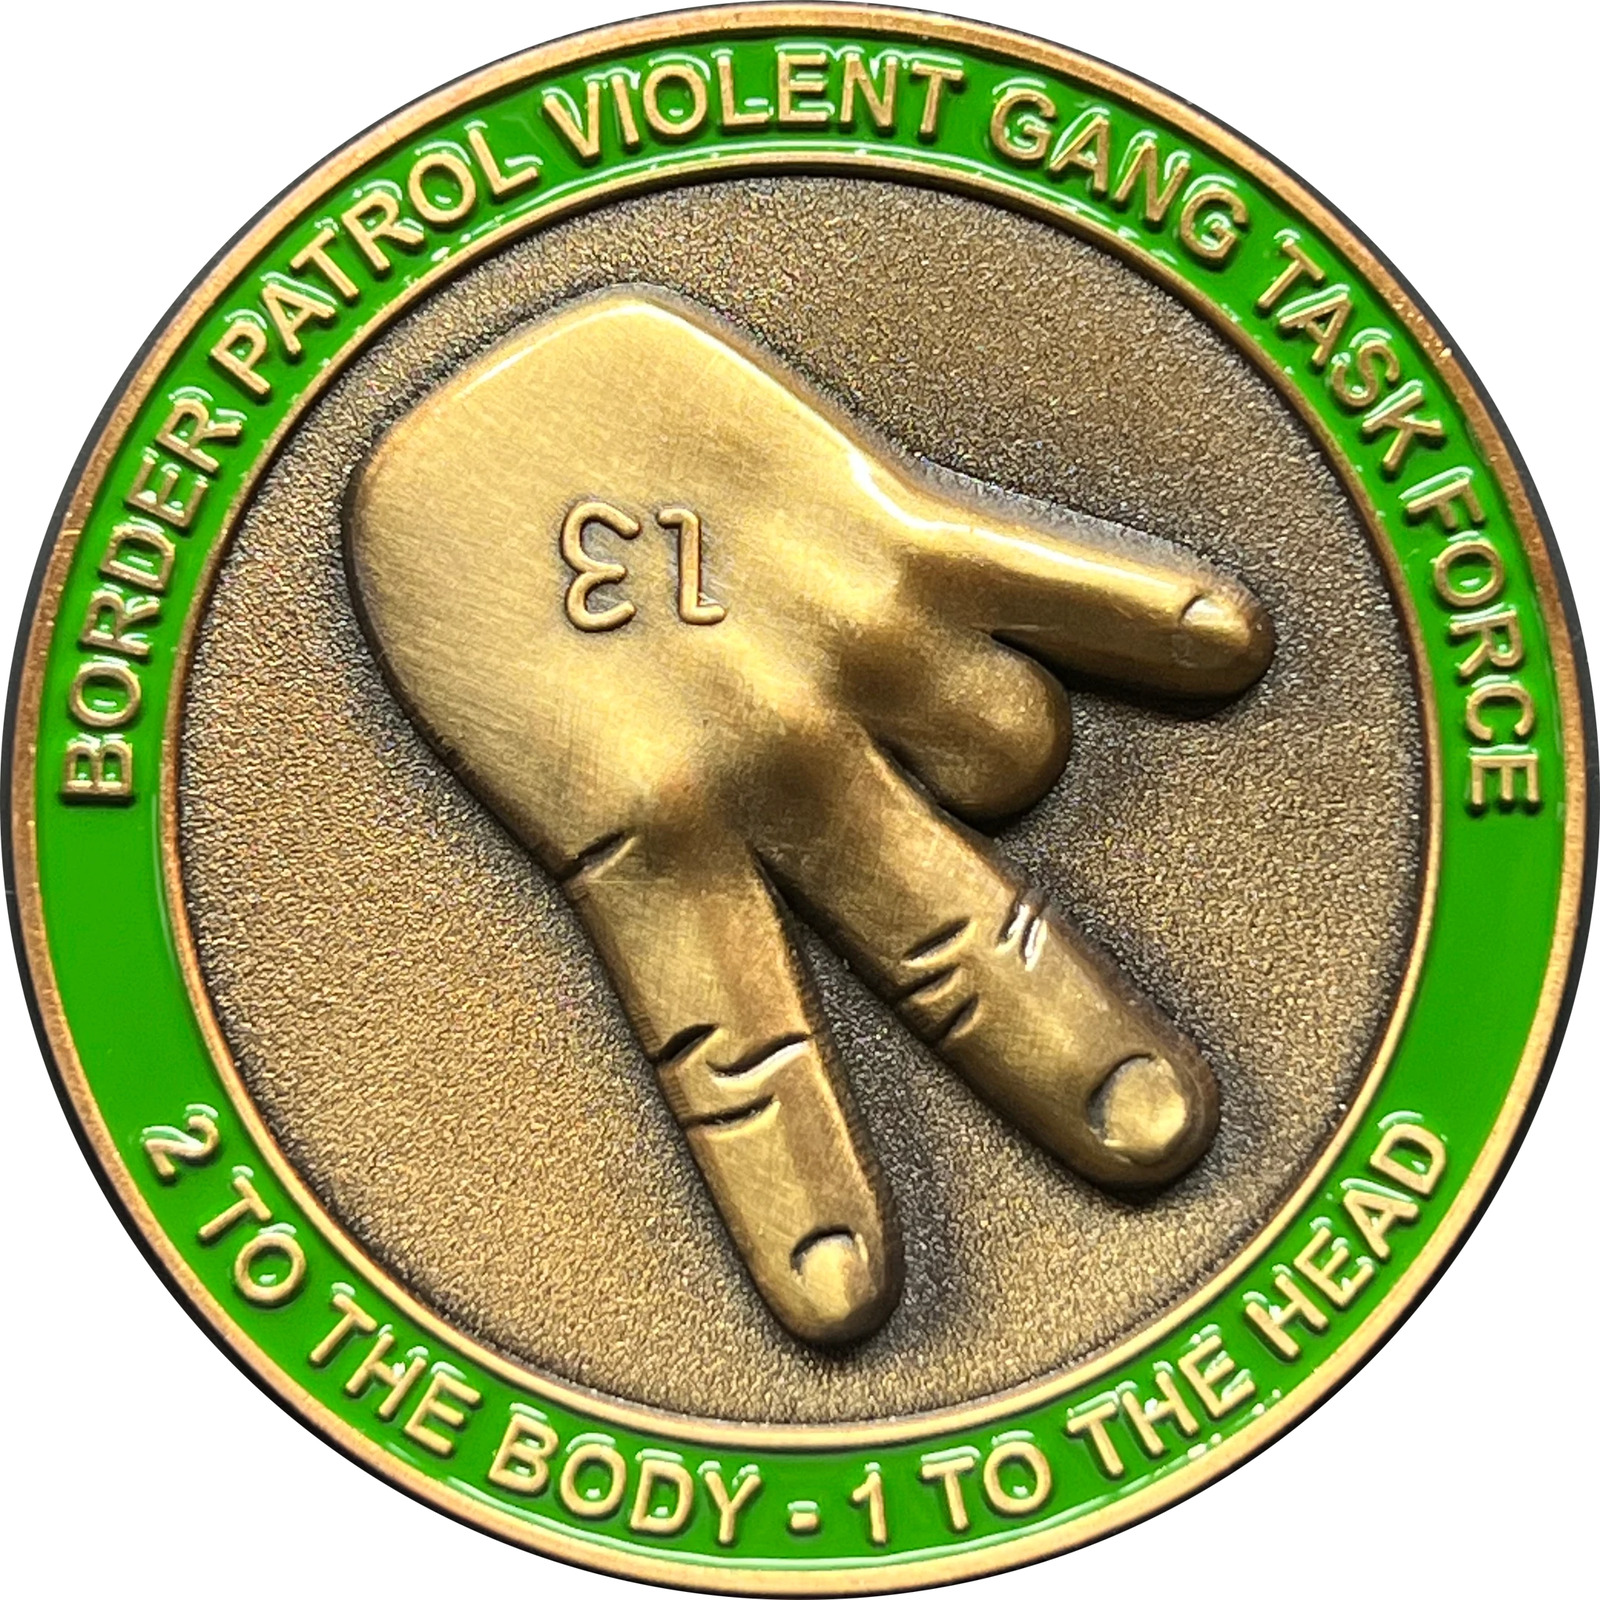 DL13-007 Border Patrol Agent CBP Task Force Challenge Coin